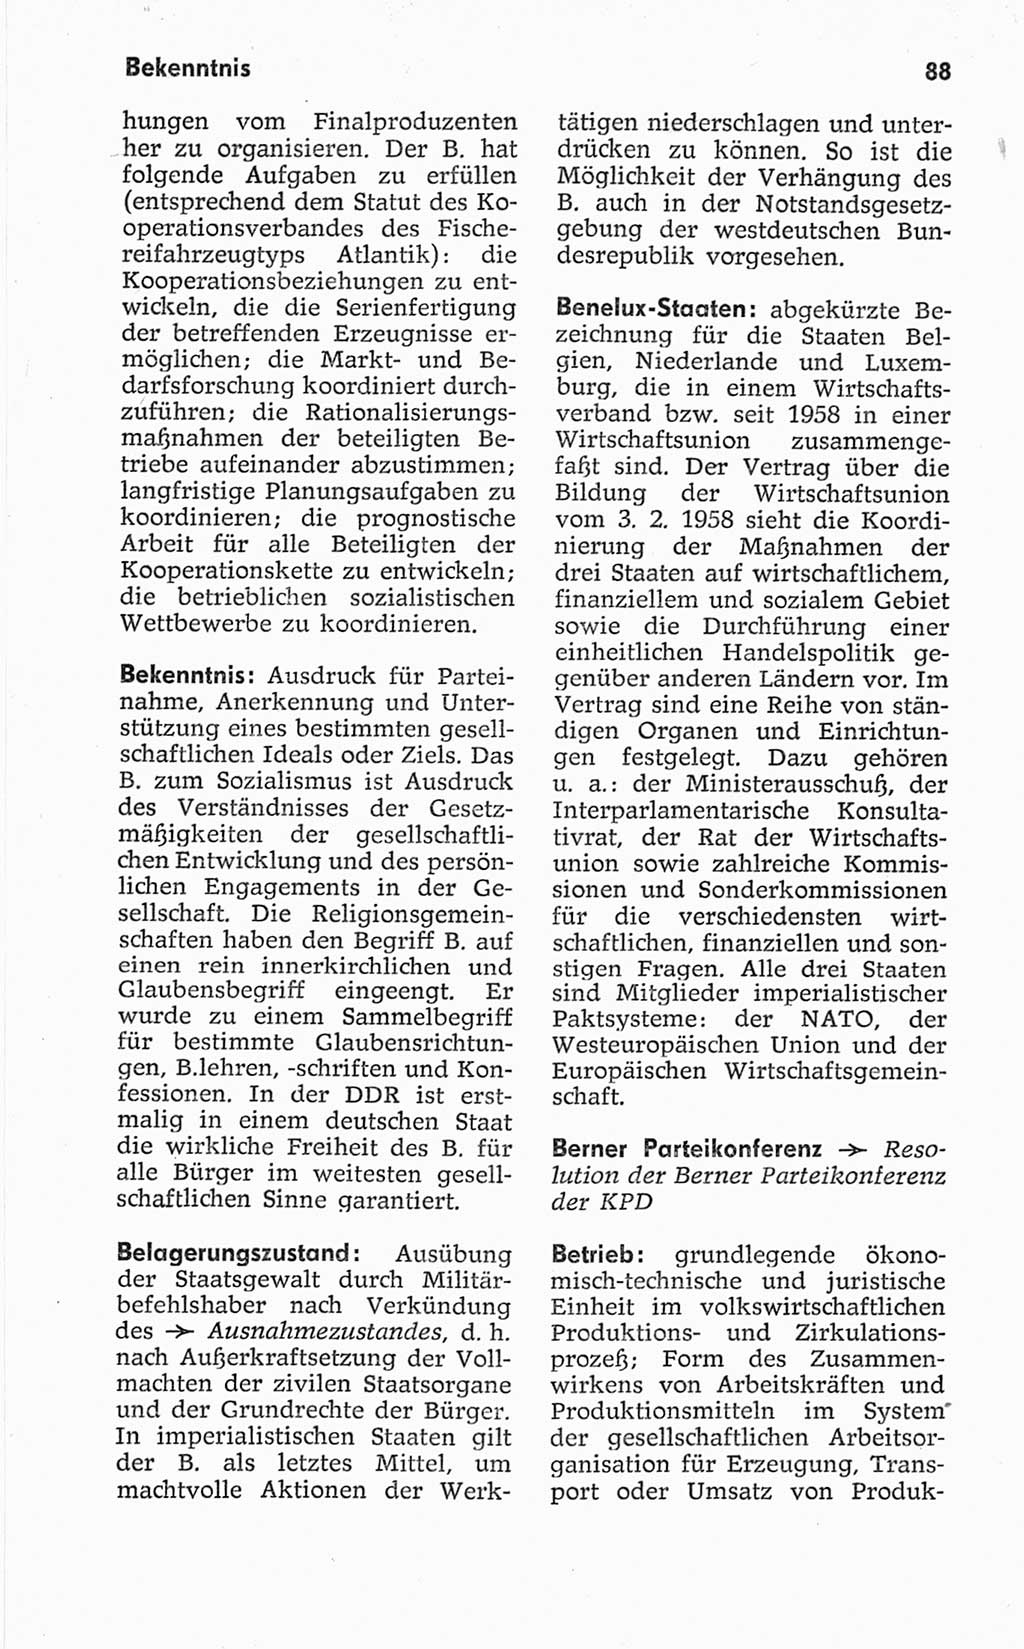 Kleines politisches Wörterbuch [Deutsche Demokratische Republik (DDR)] 1967, Seite 88 (Kl. pol. Wb. DDR 1967, S. 88)